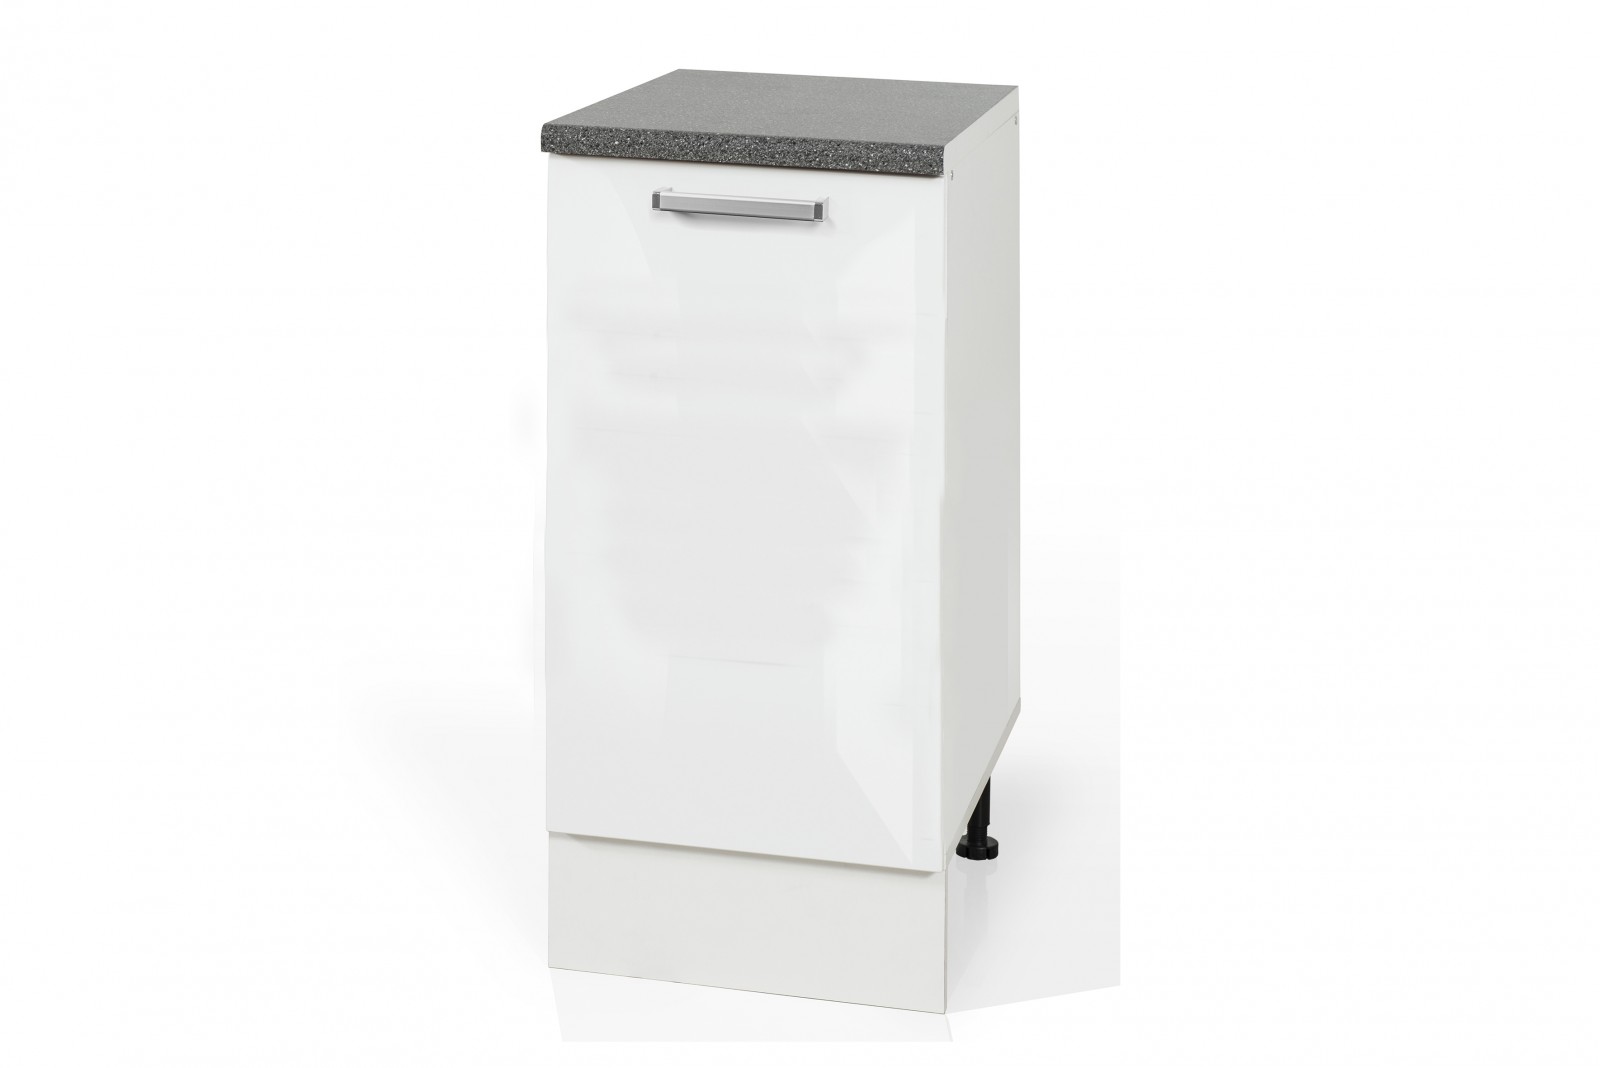 High Gloss White Base rubbish bin cabinet S401KO for kitchen